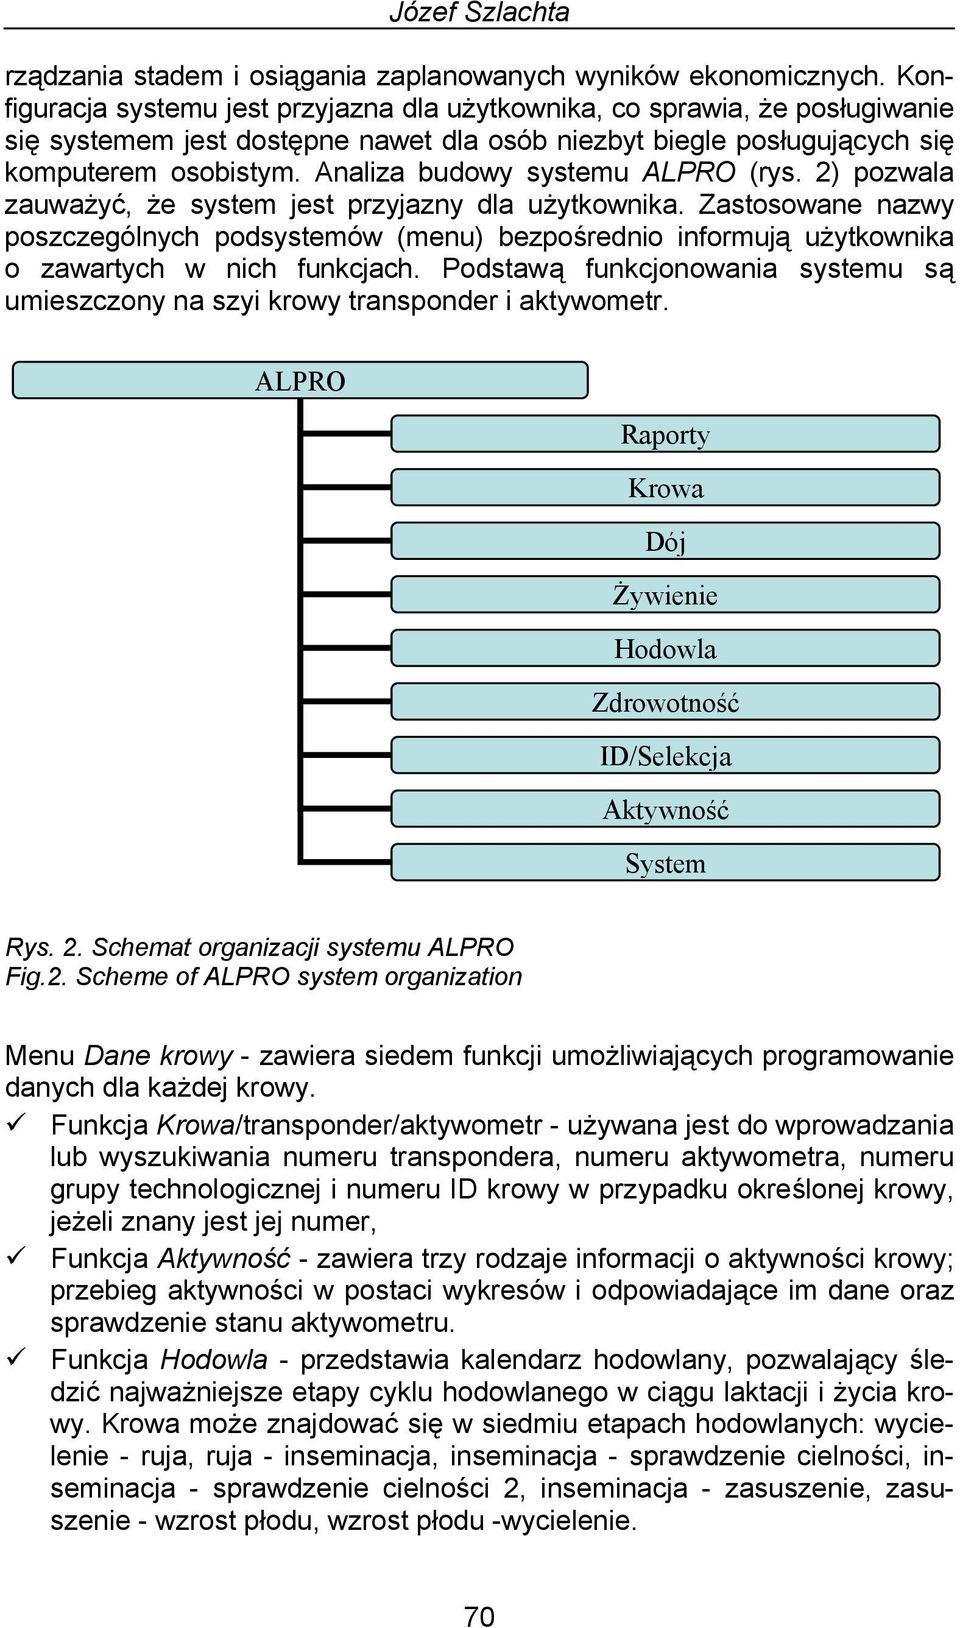 Analiza budowy systemu ALPRO (rys. 2) pozwala zauważyć, że system jest przyjazny dla użytkownika.